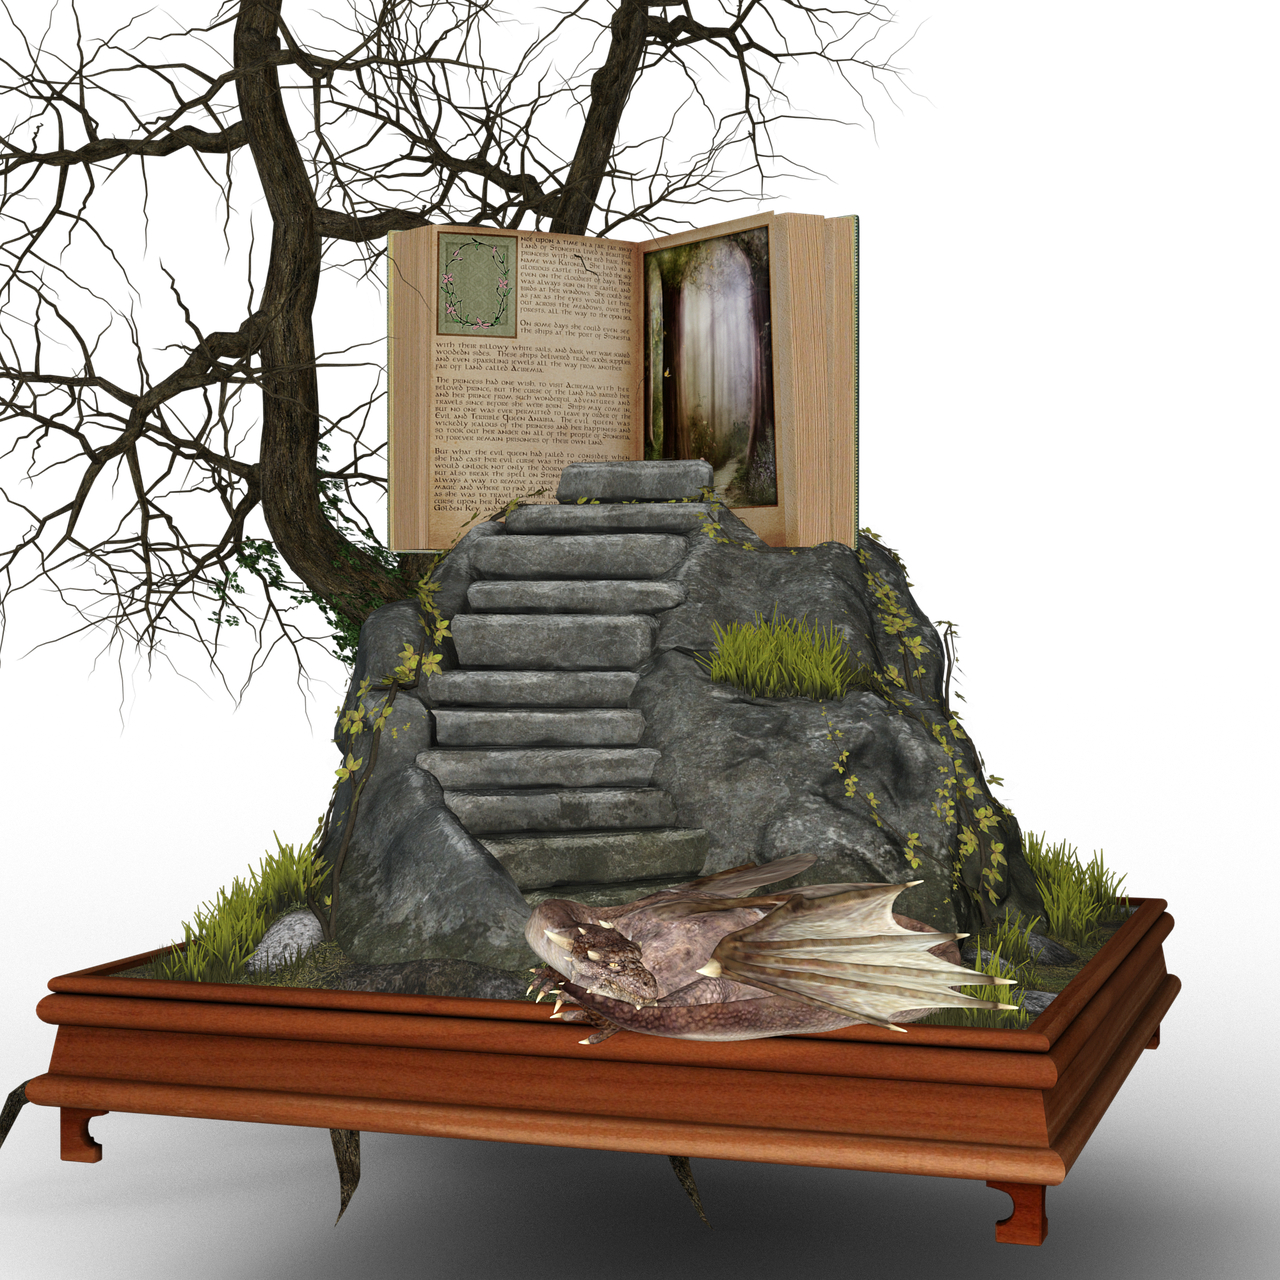 Una escalera en la roca, debajo un dragón, encima un árbol sin hojas y al lado un libro abierto.